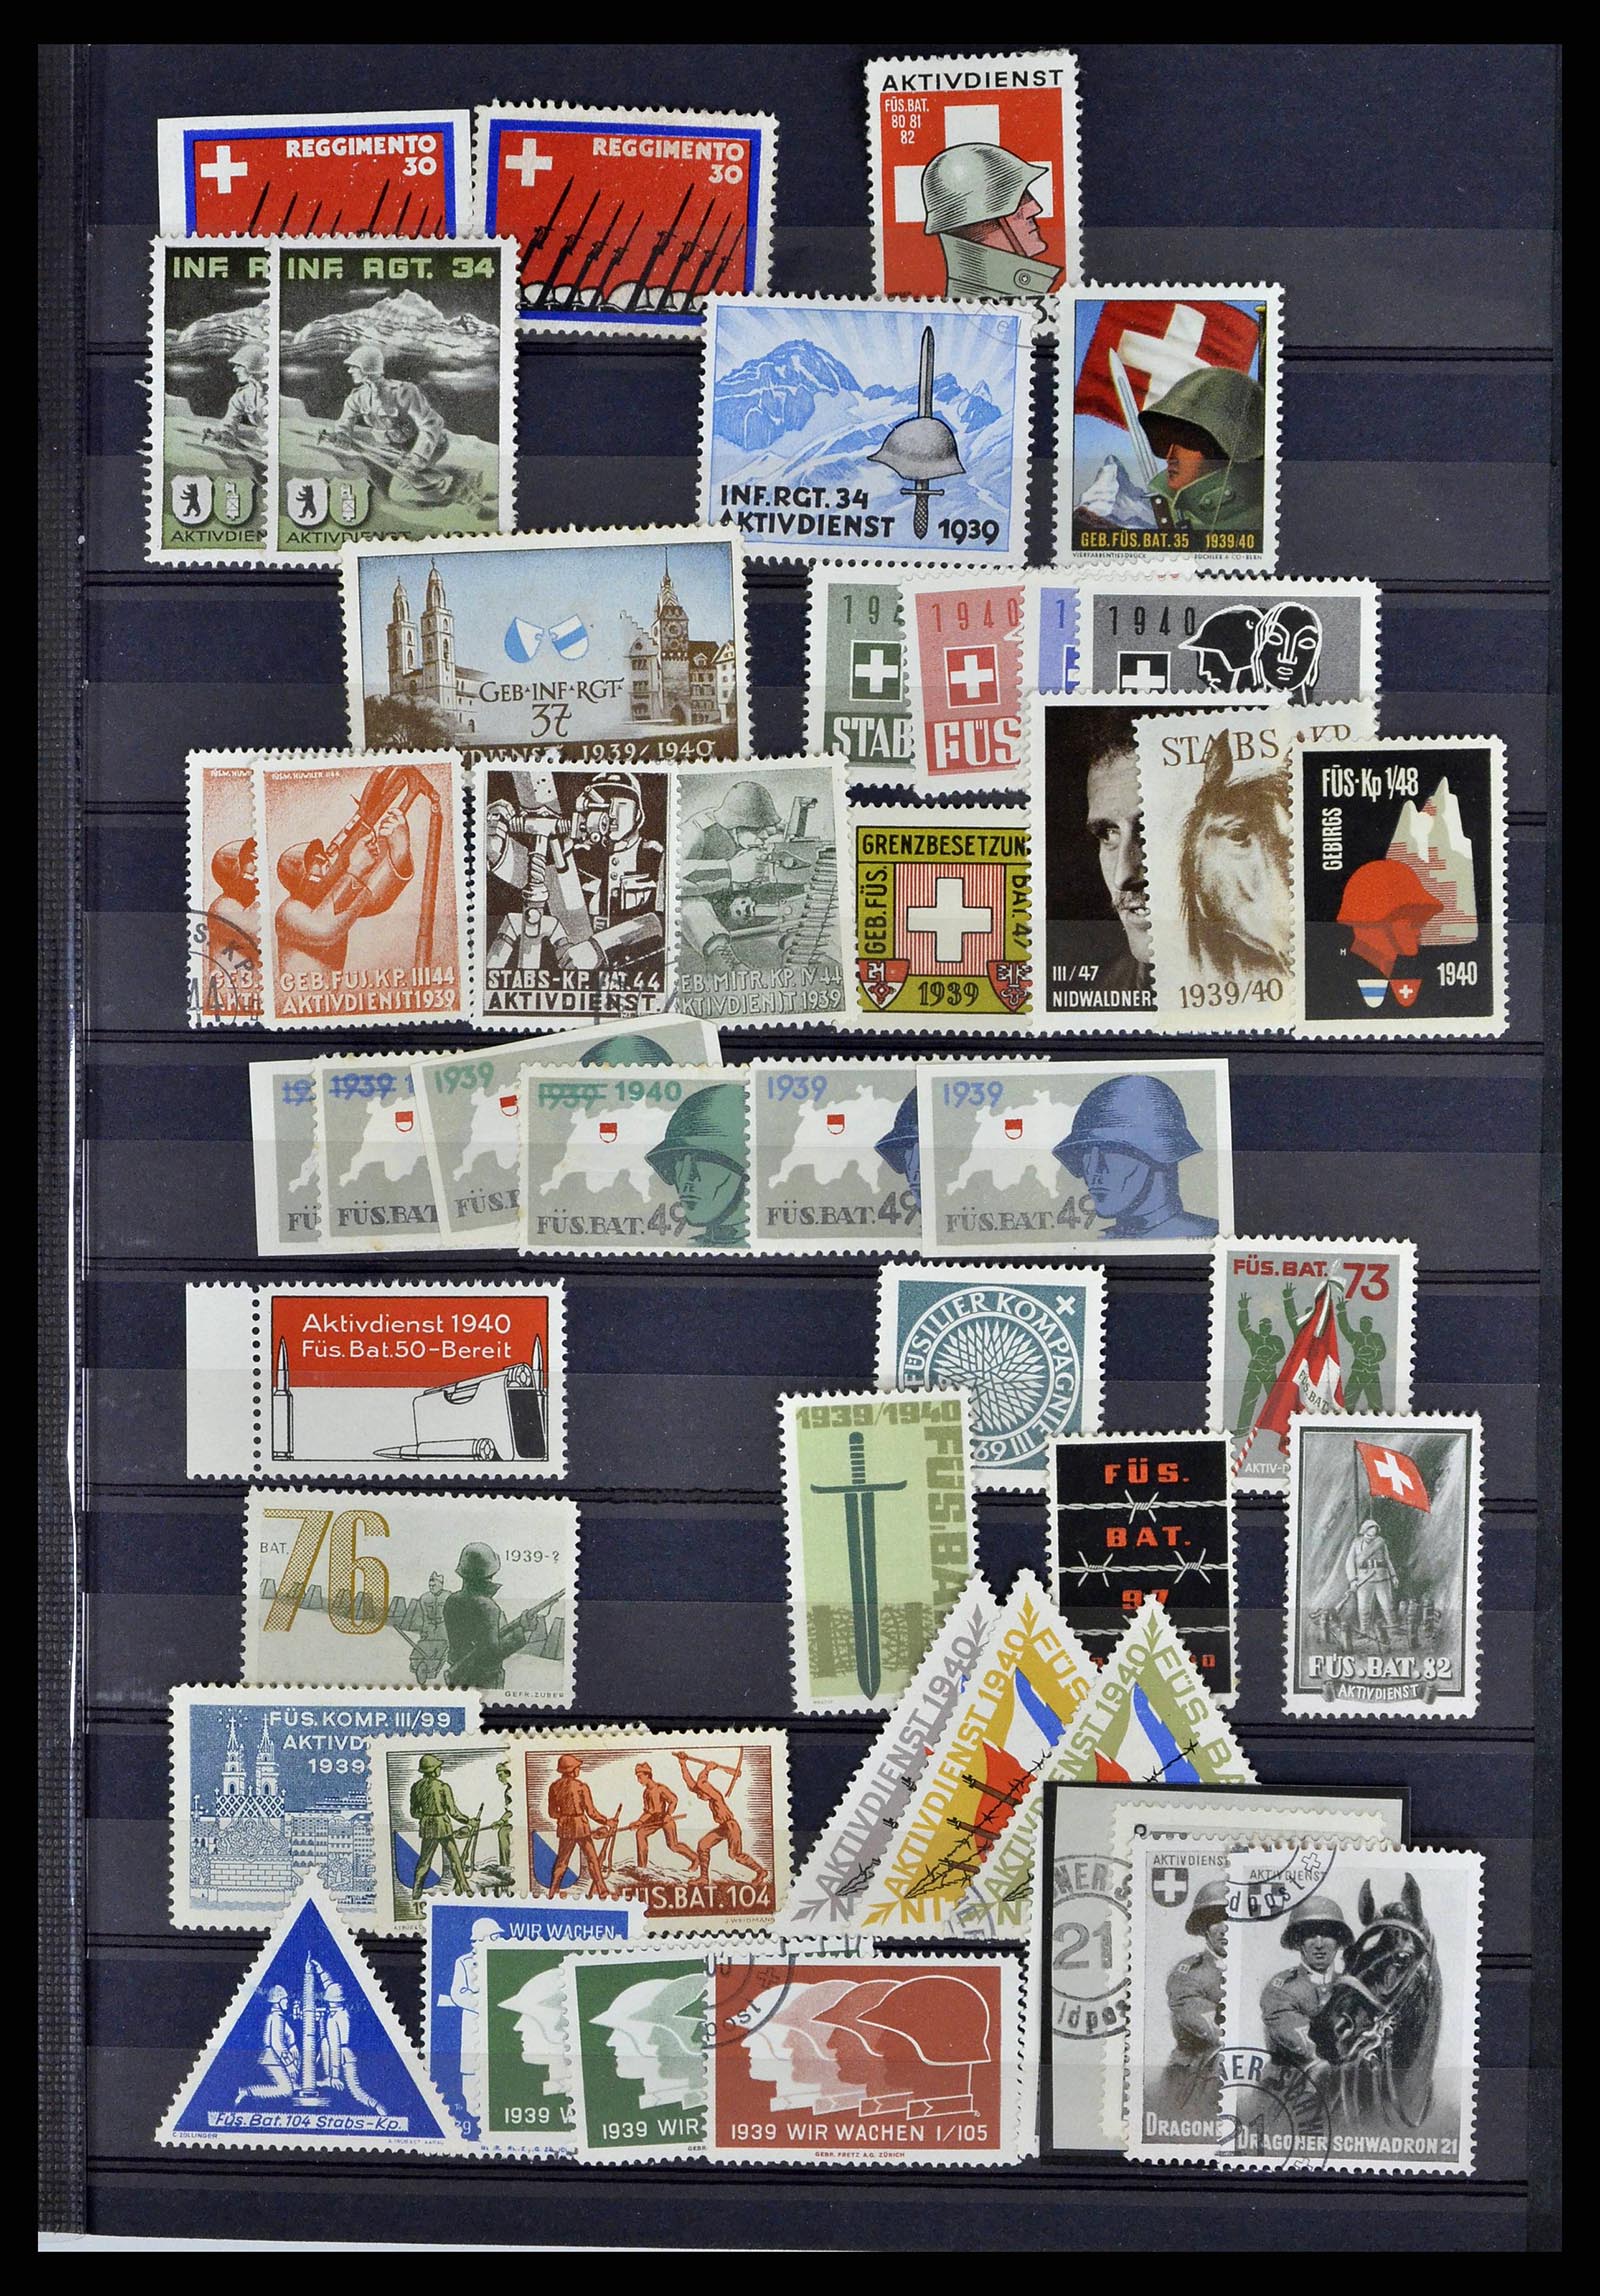 38768 0047 - Stamp collection 38768 Switzerland soldierstamps 1914-1945.